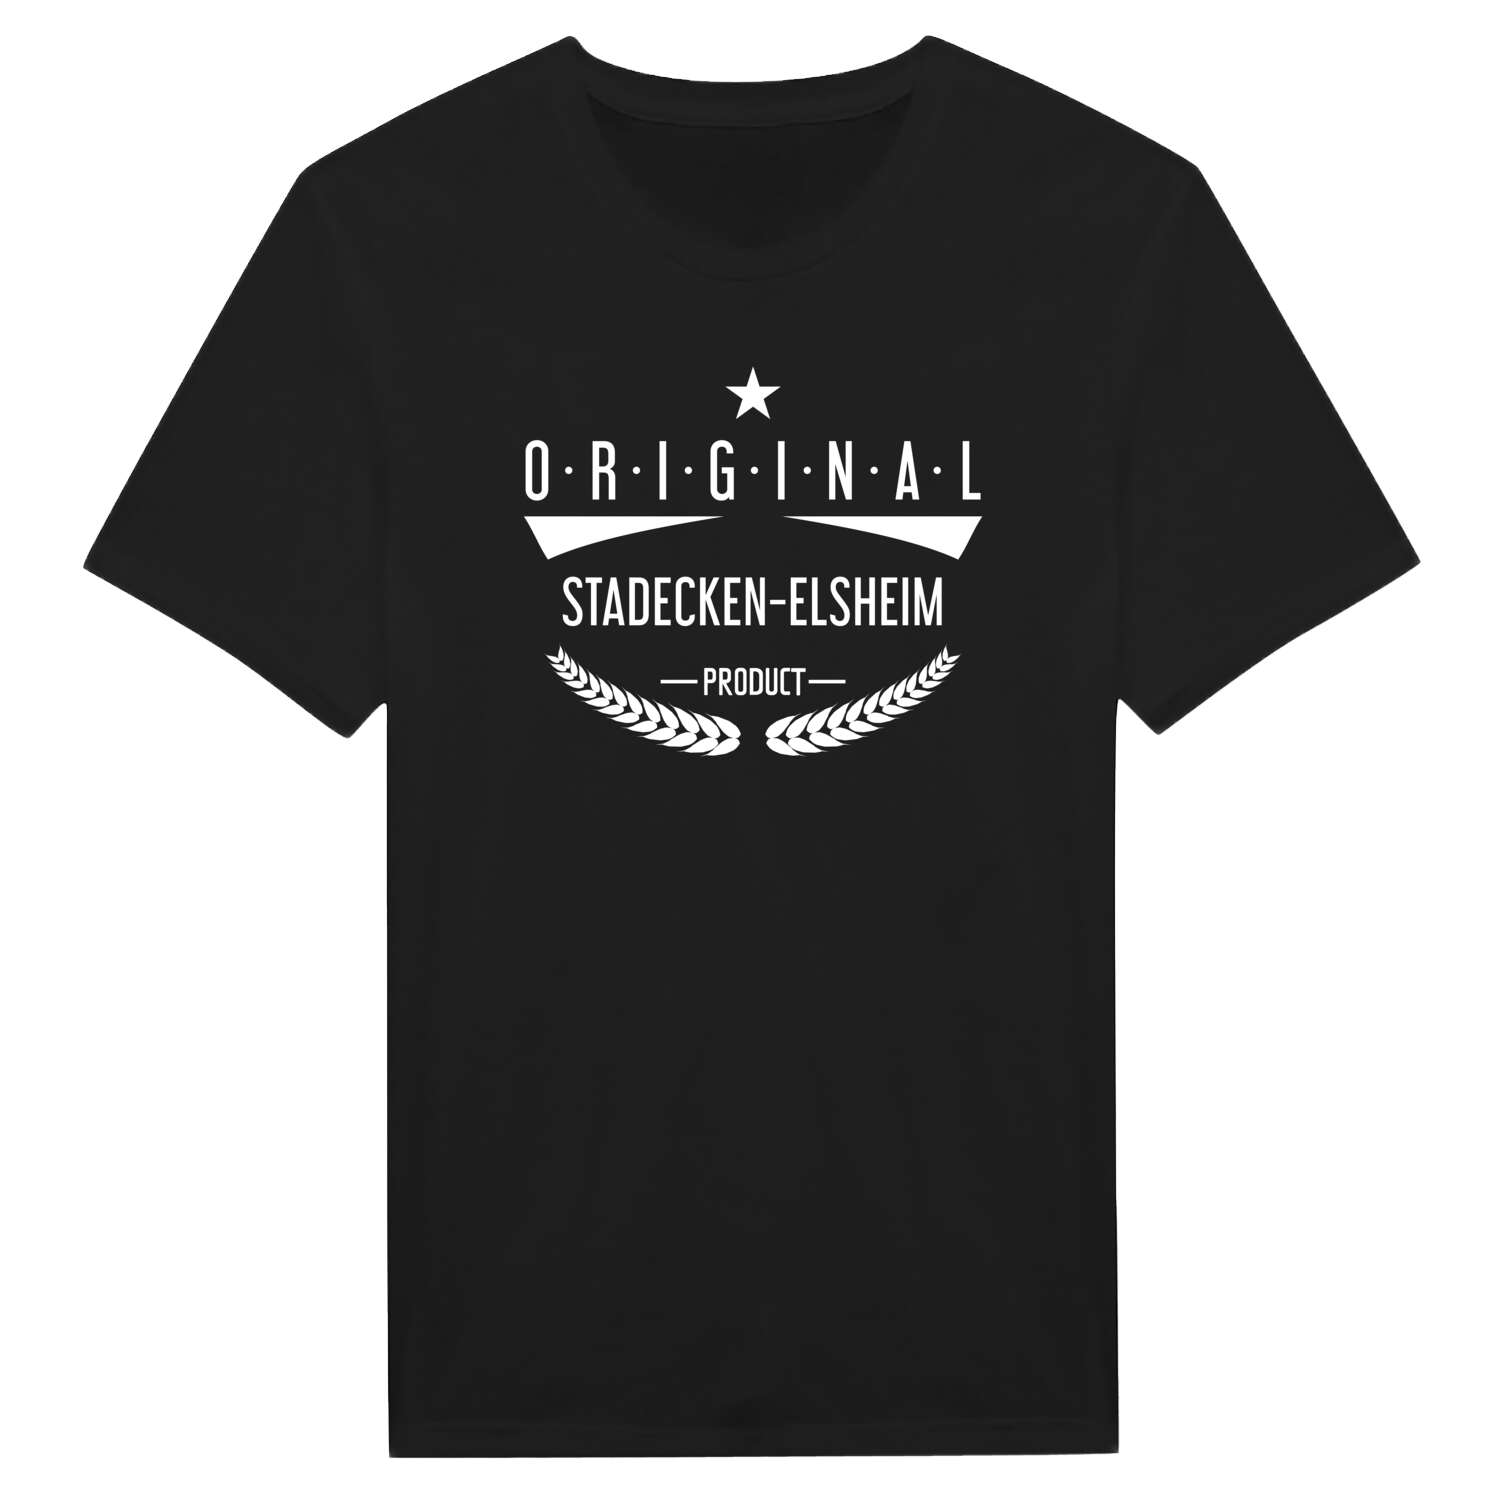 Stadecken-Elsheim T-Shirt »Original Product«